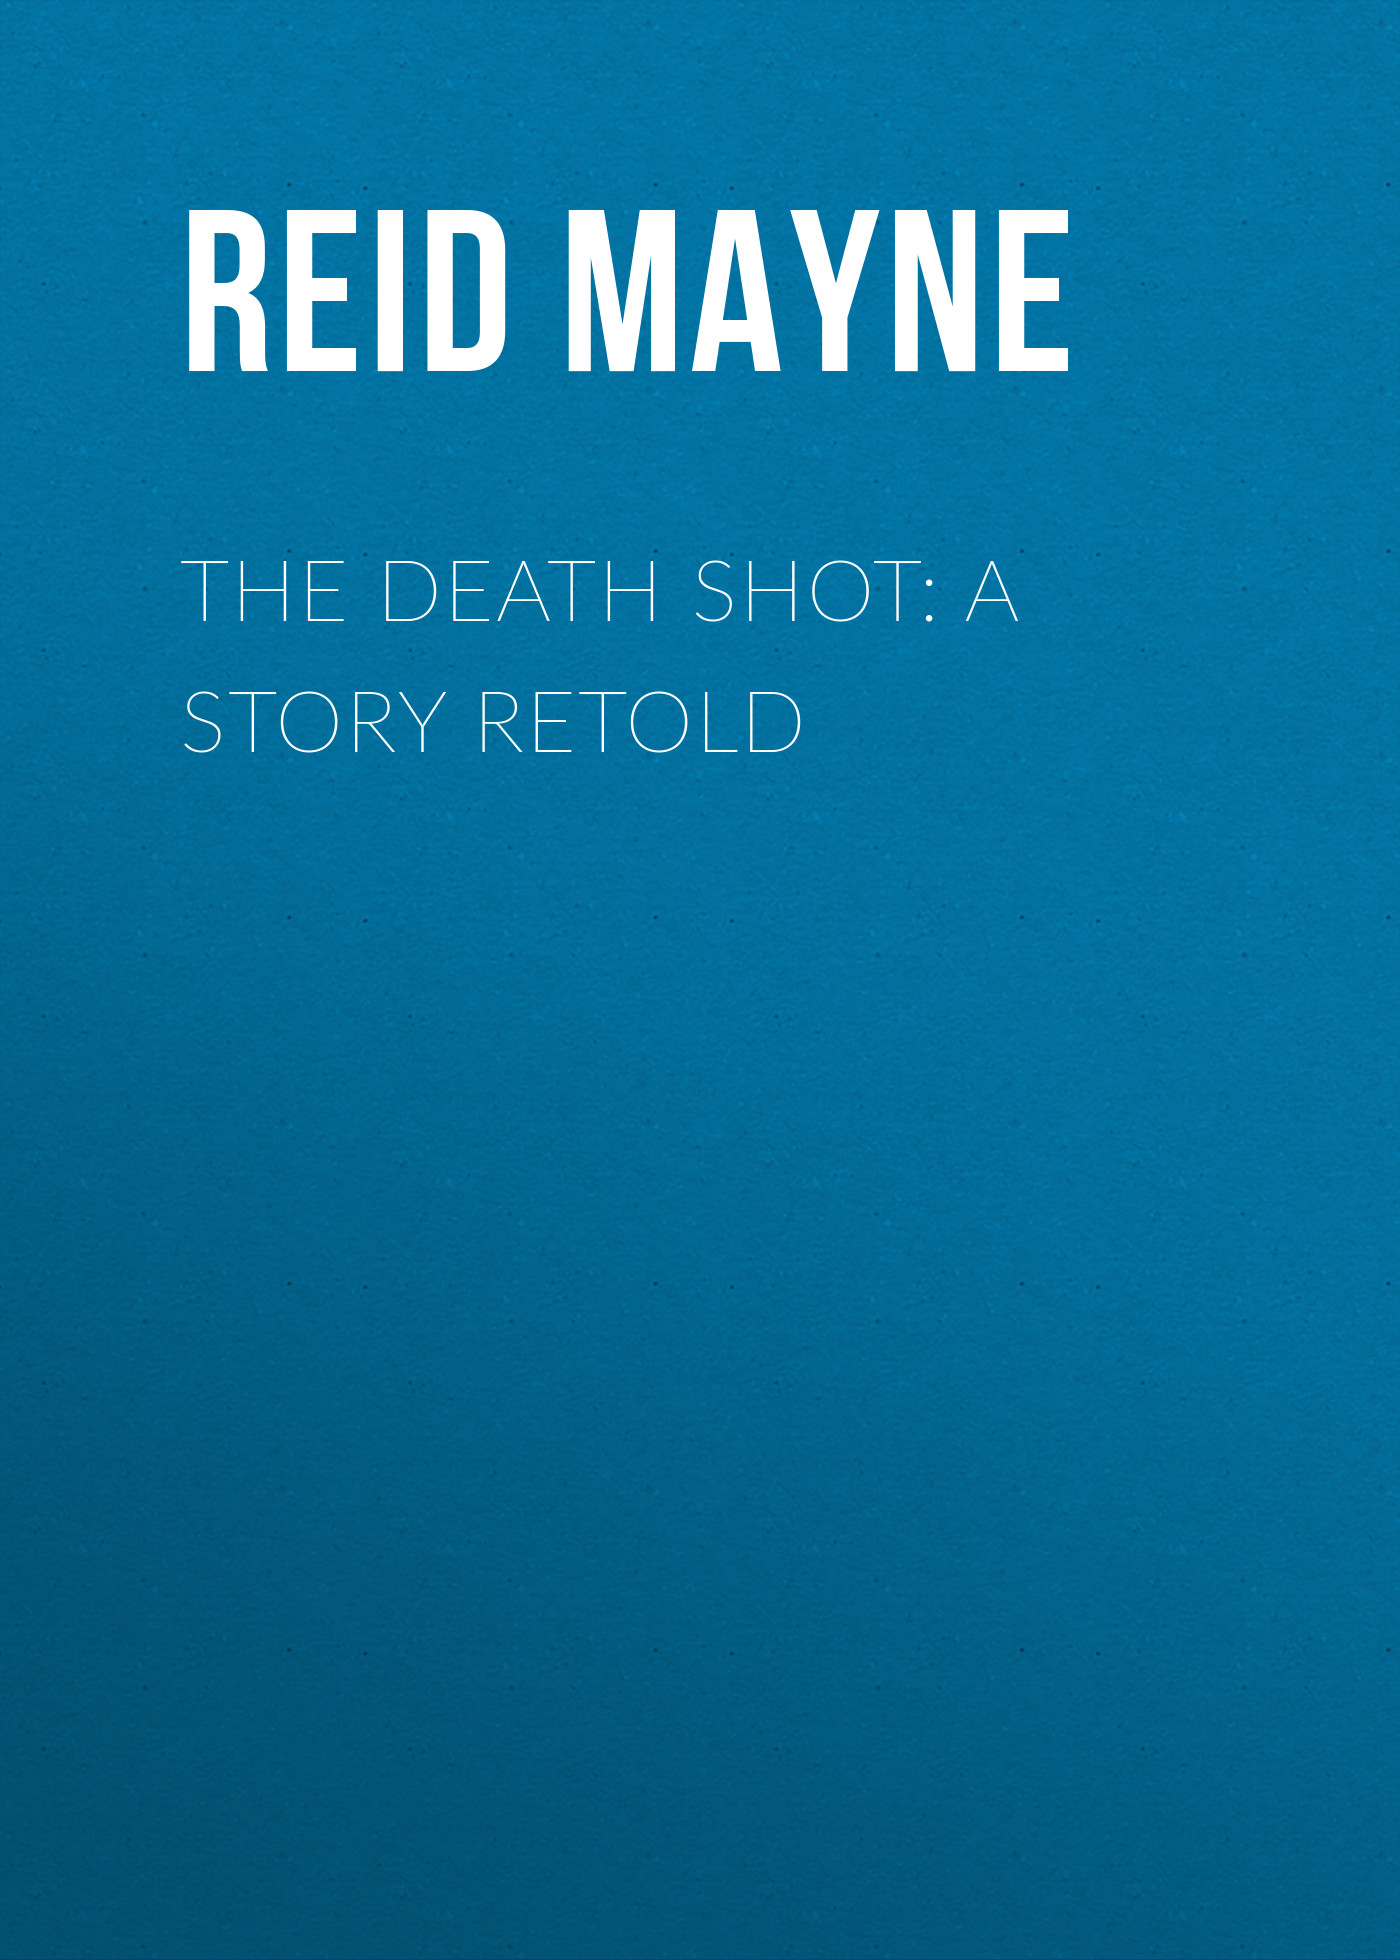 Книга The Death Shot: A Story Retold из серии , созданная Mayne Reid, может относится к жанру Литература 19 века, Зарубежная старинная литература, Зарубежная классика. Стоимость электронной книги The Death Shot: A Story Retold с идентификатором 25448804 составляет 0 руб.